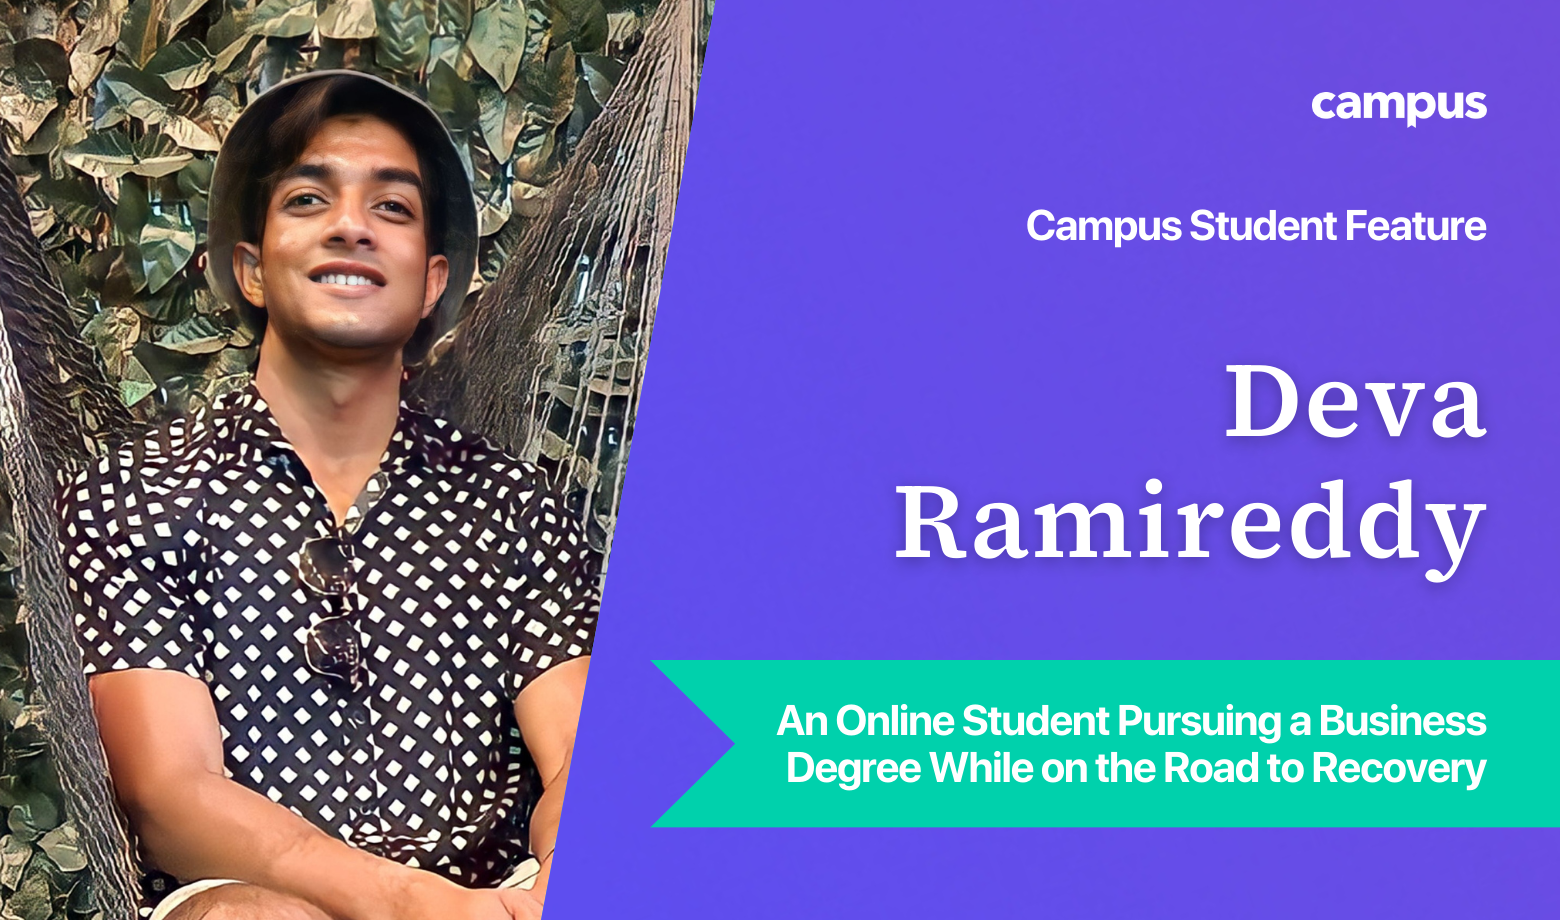 Campus Student Feature: Deva Ramireddy